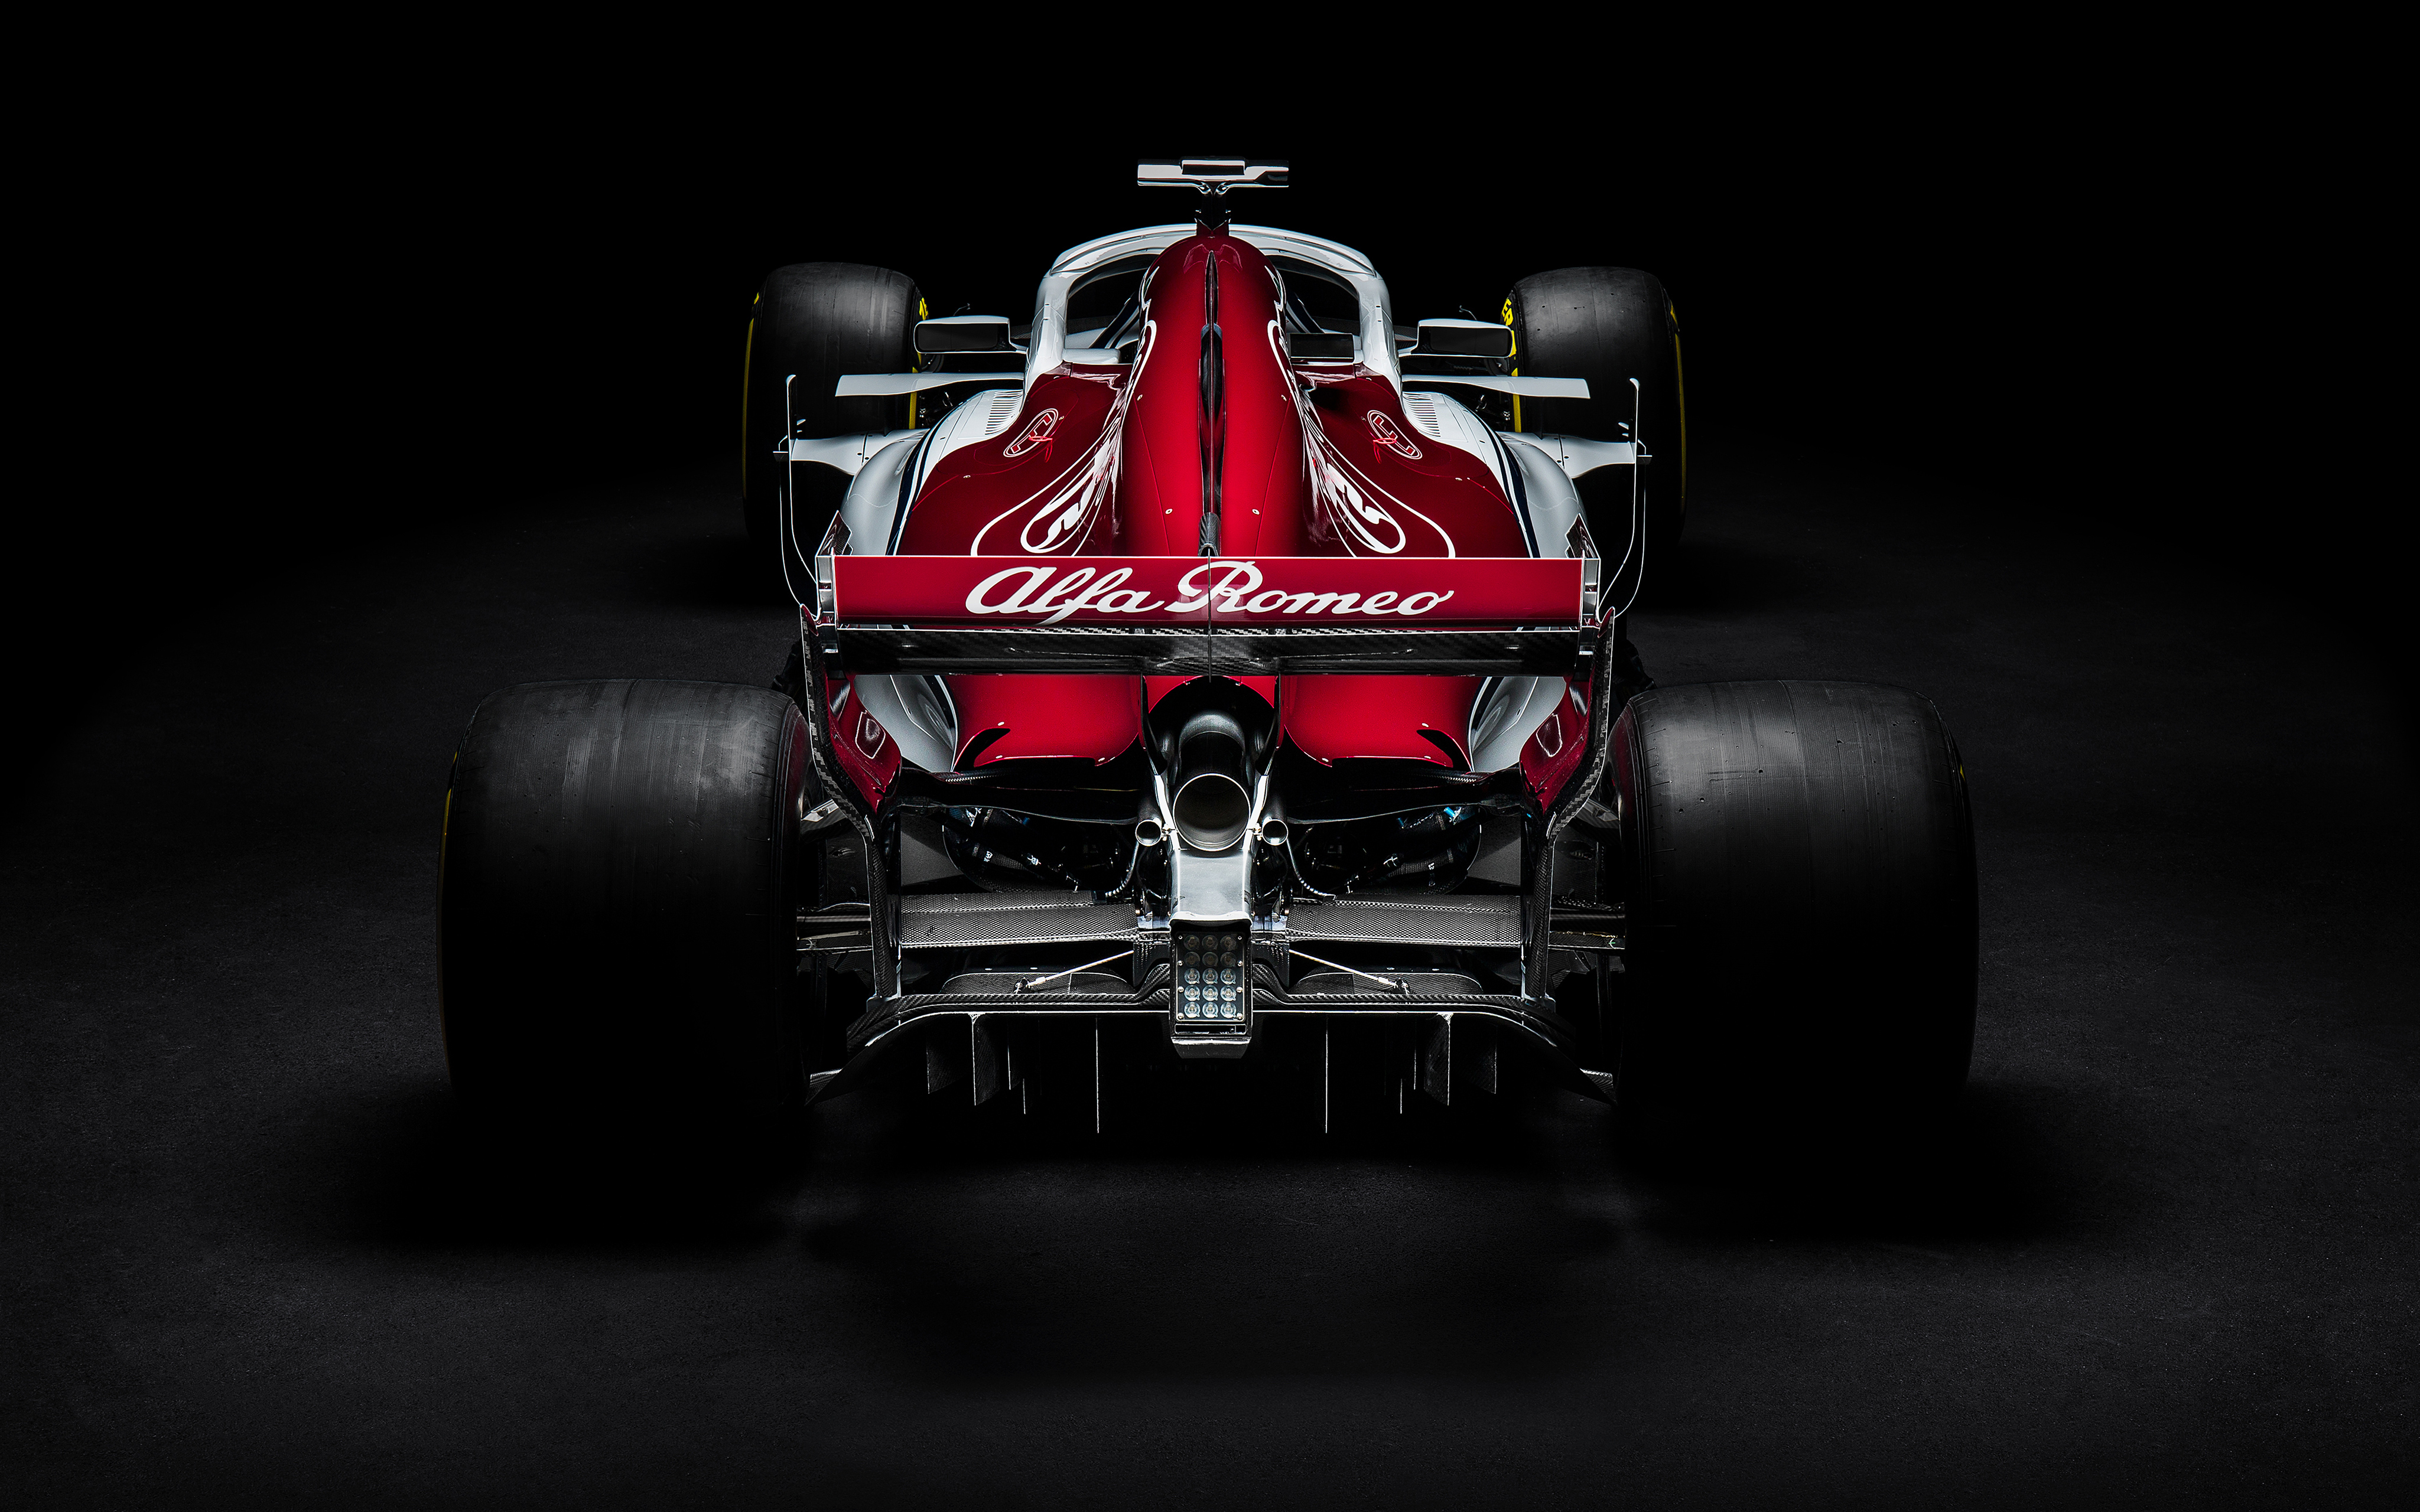 2018 Sauber C37 Formula One Racing car 4K Wallpapers